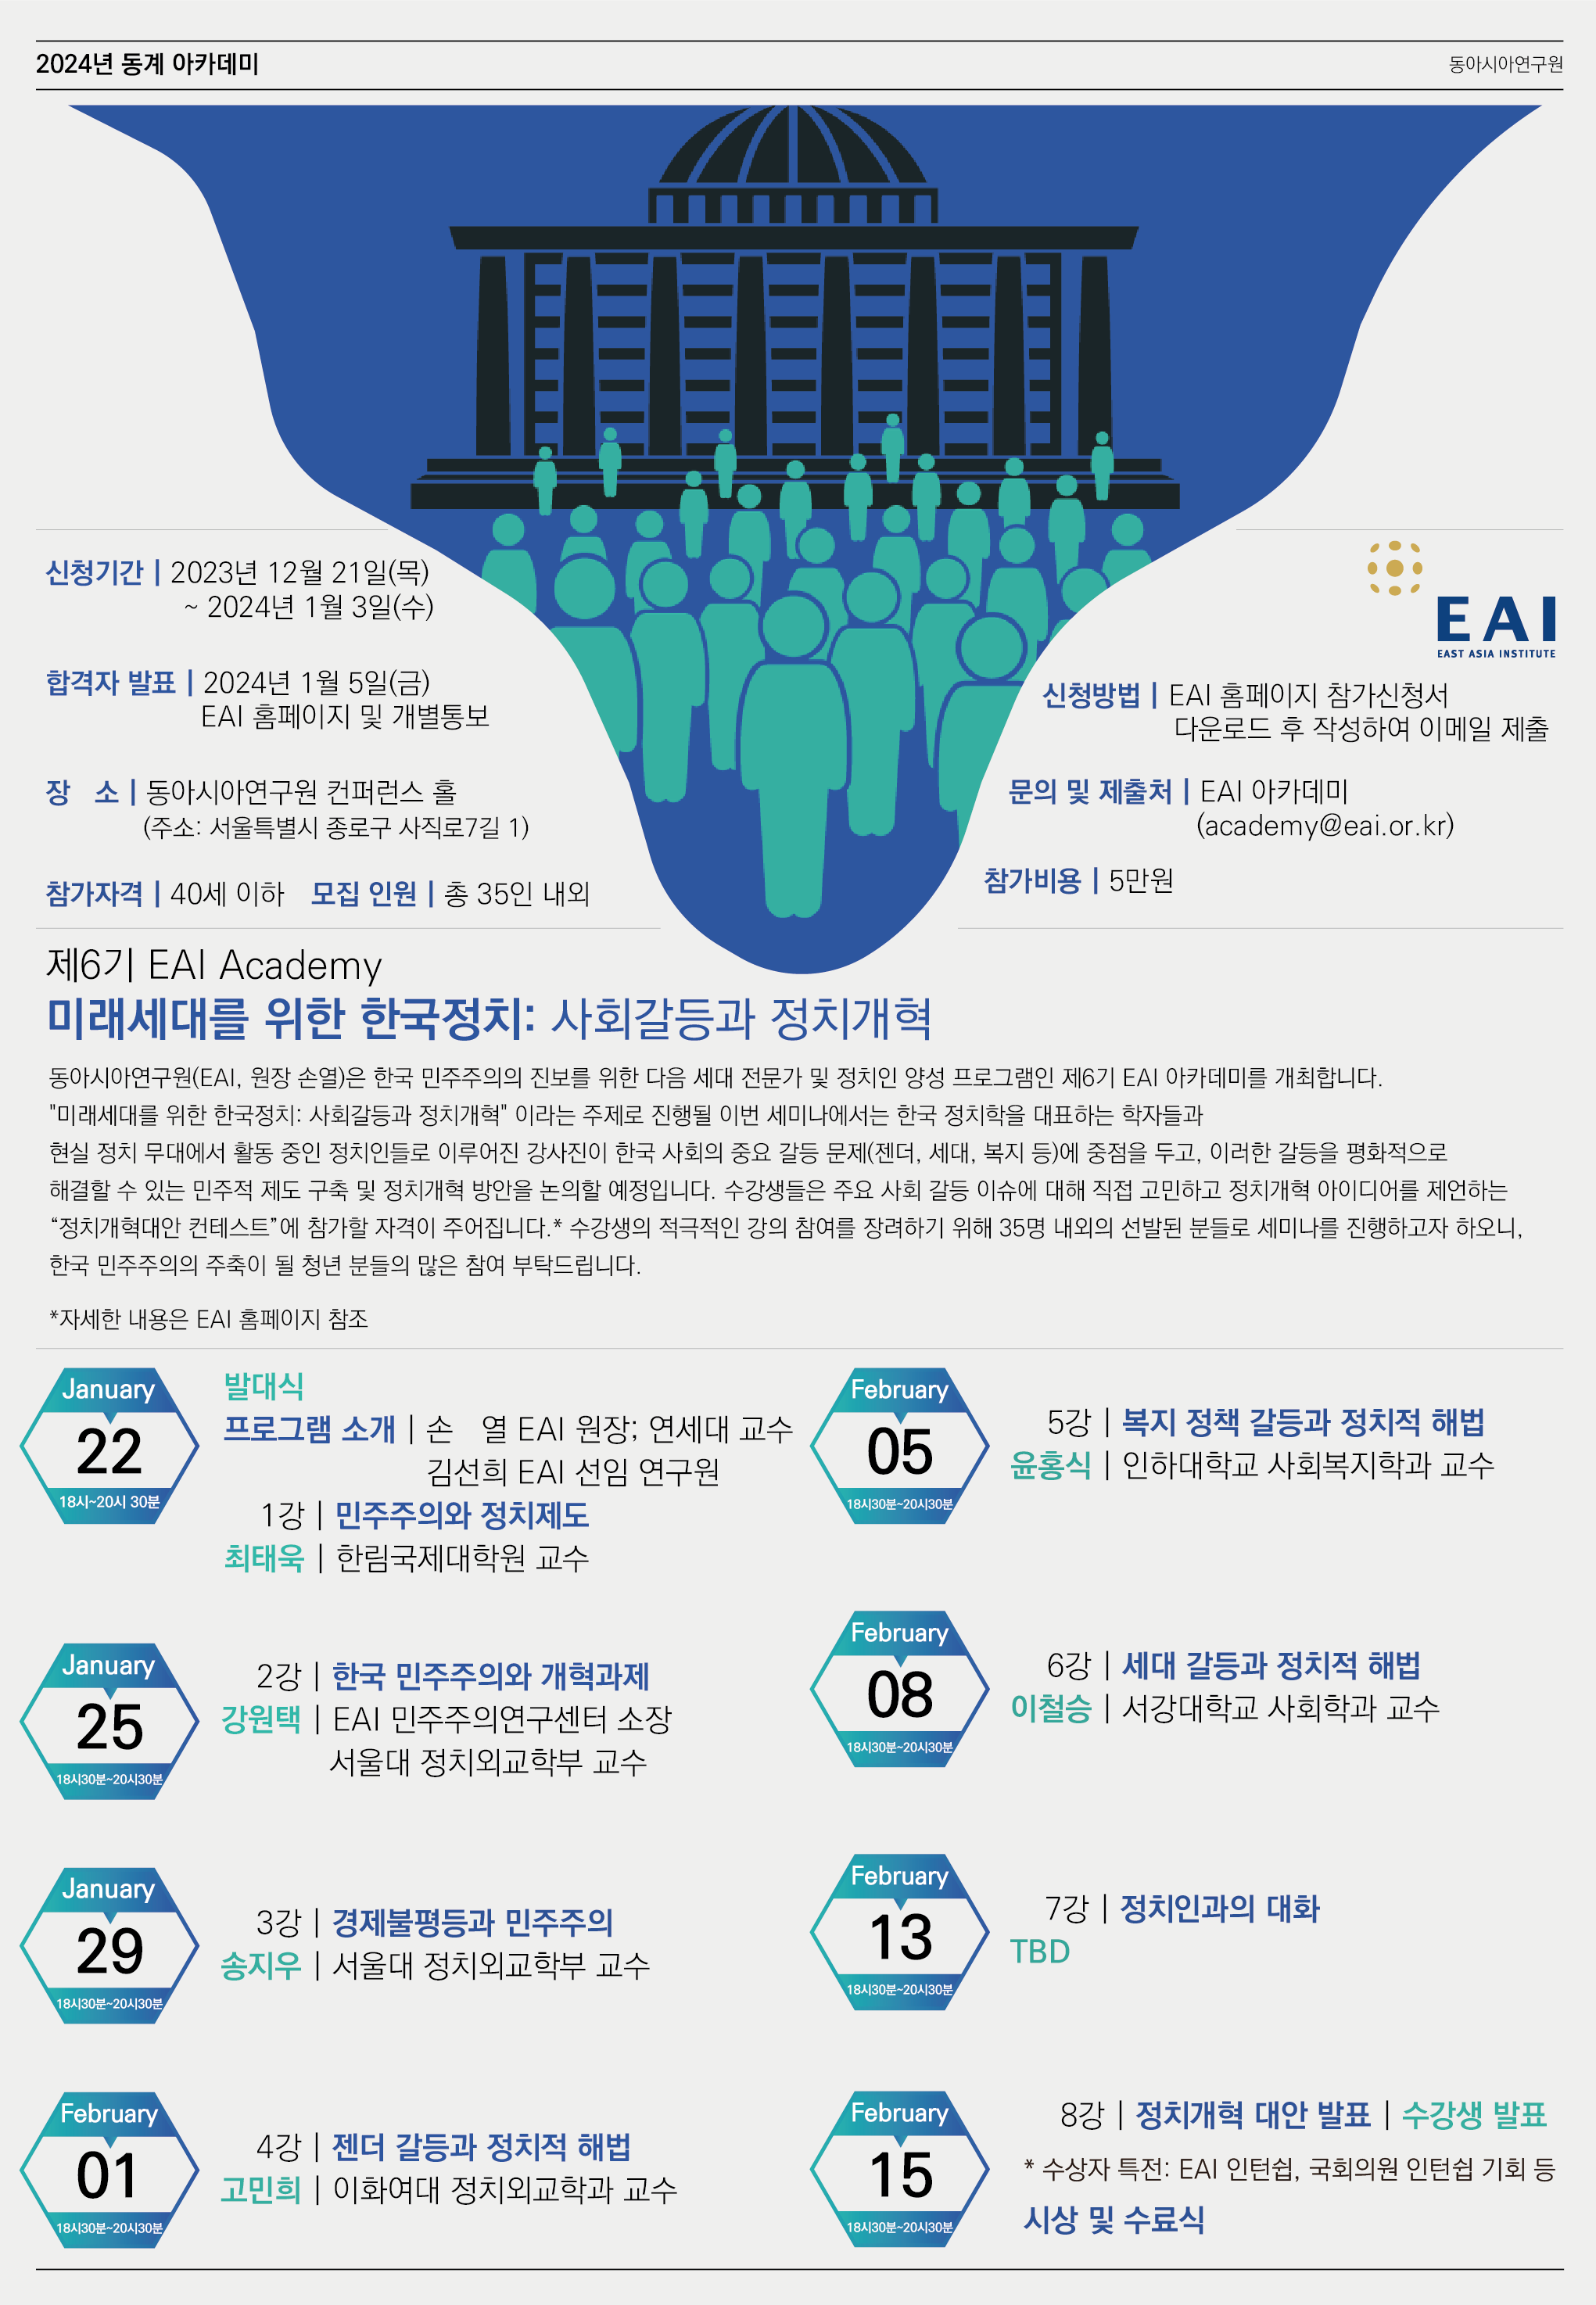 [제6기 EAI Academy] “미래세대를 위한 한국정치” 세미나